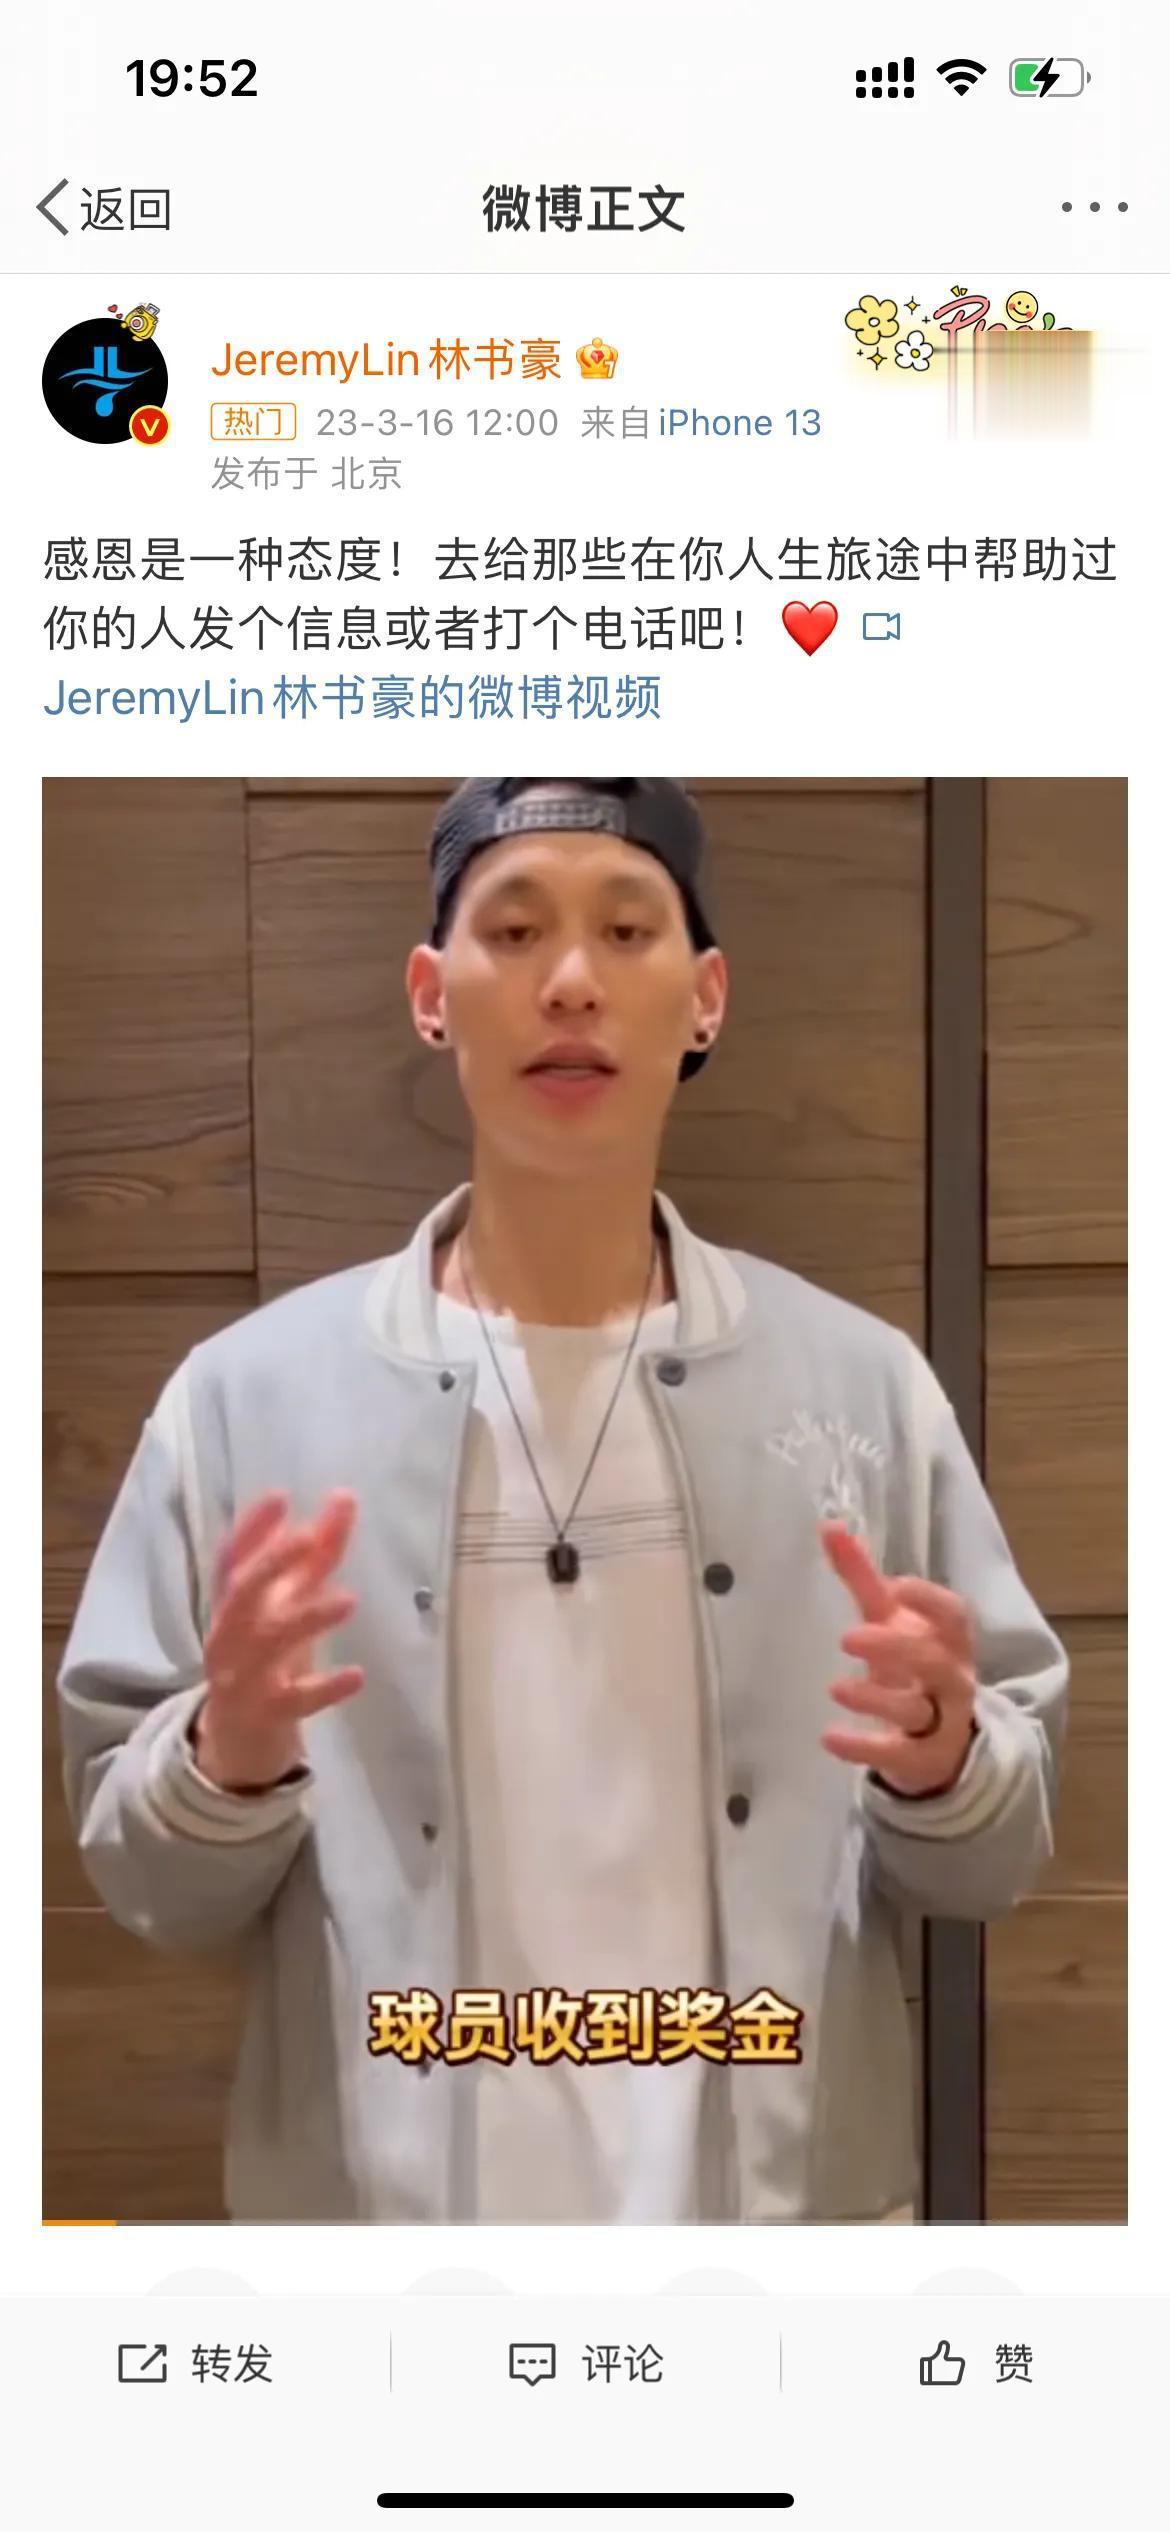 争议！NBA球星林书豪录视频用简体中文，中国台湾网友崩溃：能别用残体字吗？

究(1)